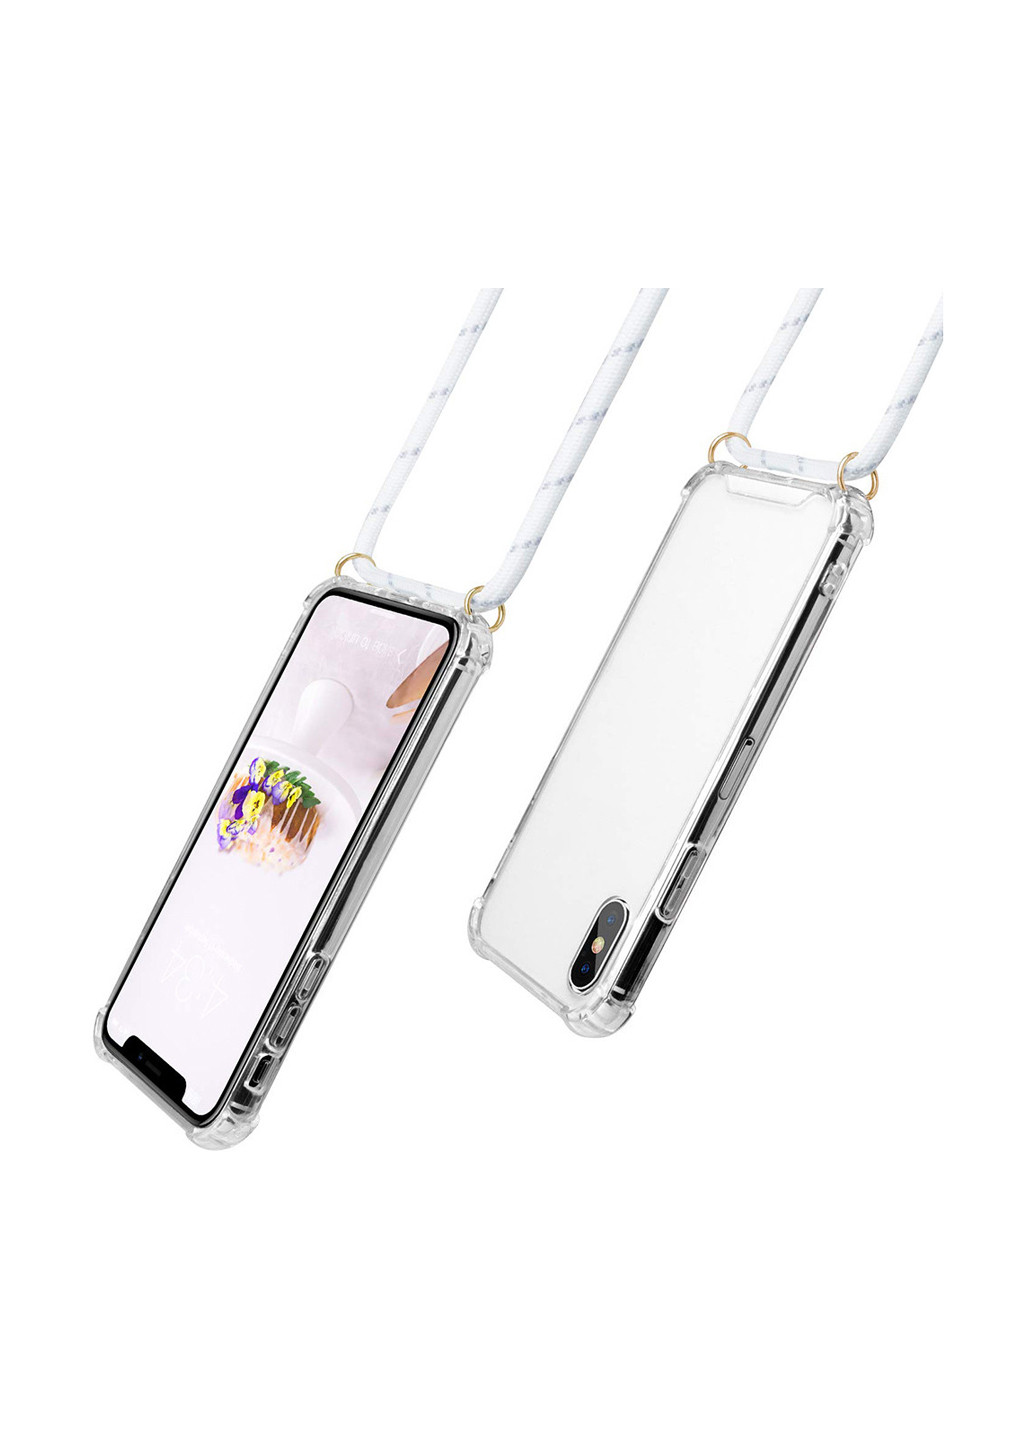 Силіконовий чохол Strap для Huawei Y6 2019 White (704279) BeCover strap для huawei y6 2019 white (704279) (154454138)